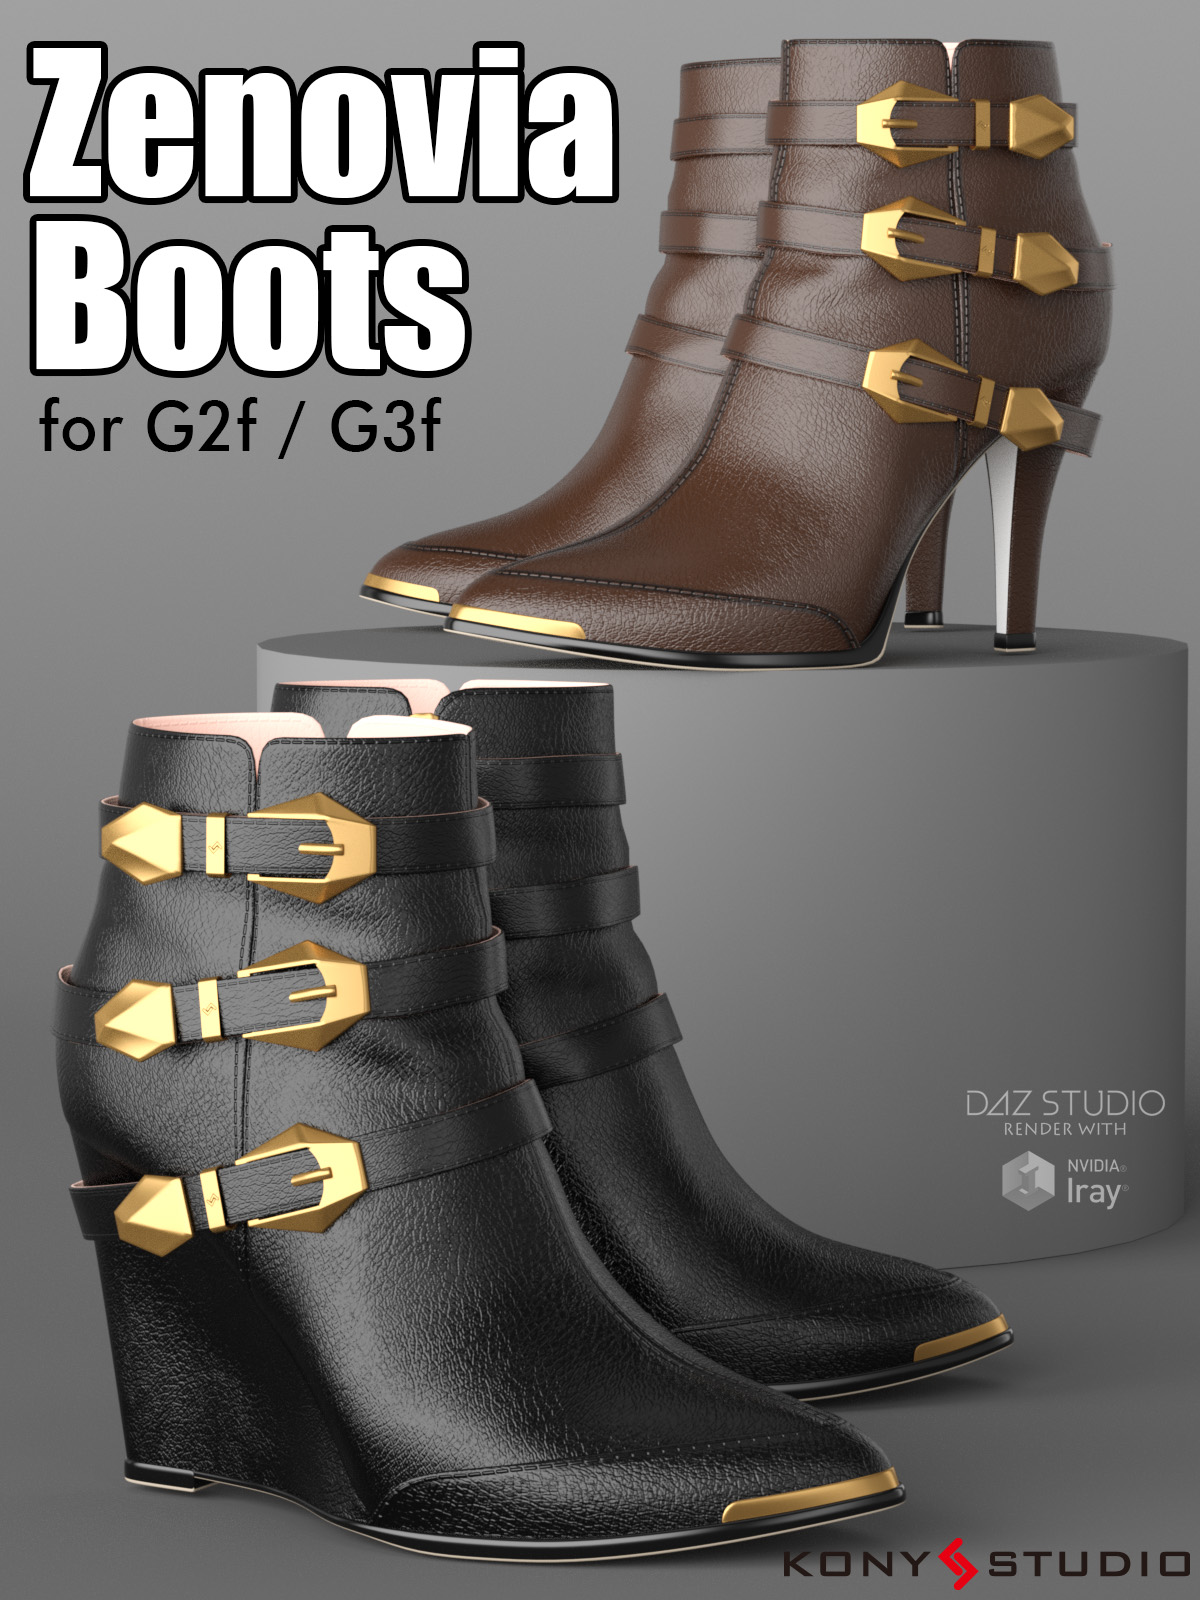 Zenovia Boots for G2f/G3f